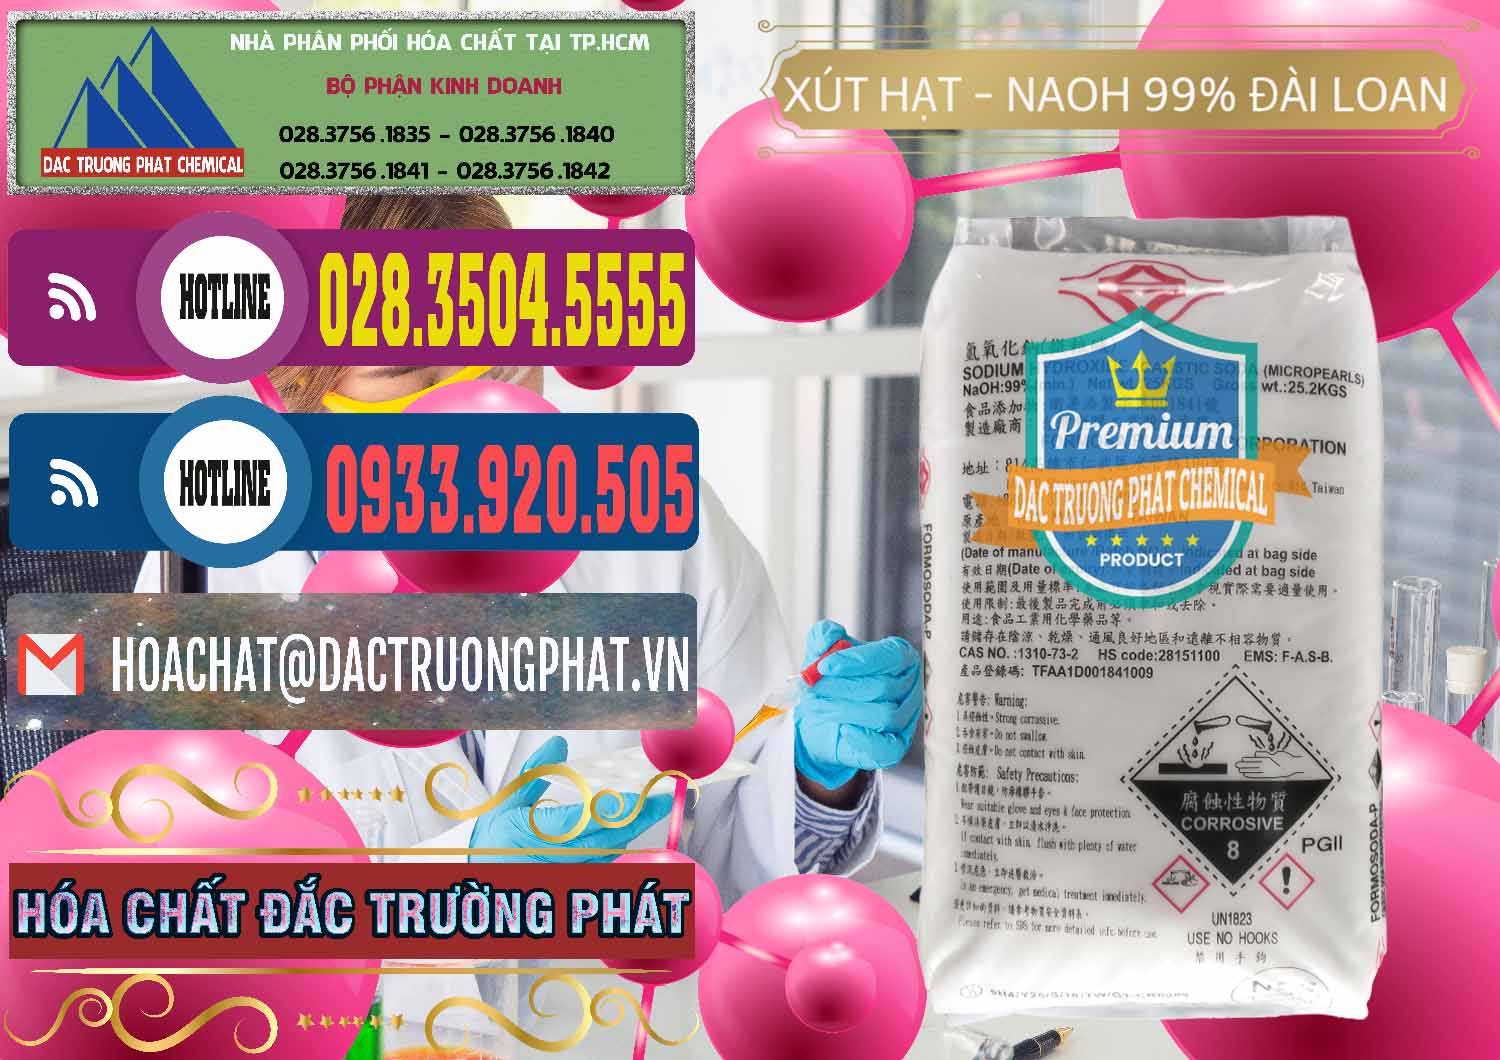 Đơn vị chuyên phân phối & bán Xút Hạt - NaOH Bột 99% Đài Loan Taiwan Formosa - 0167 - Công ty chuyên cung cấp _ kinh doanh hóa chất tại TP.HCM - muabanhoachat.com.vn